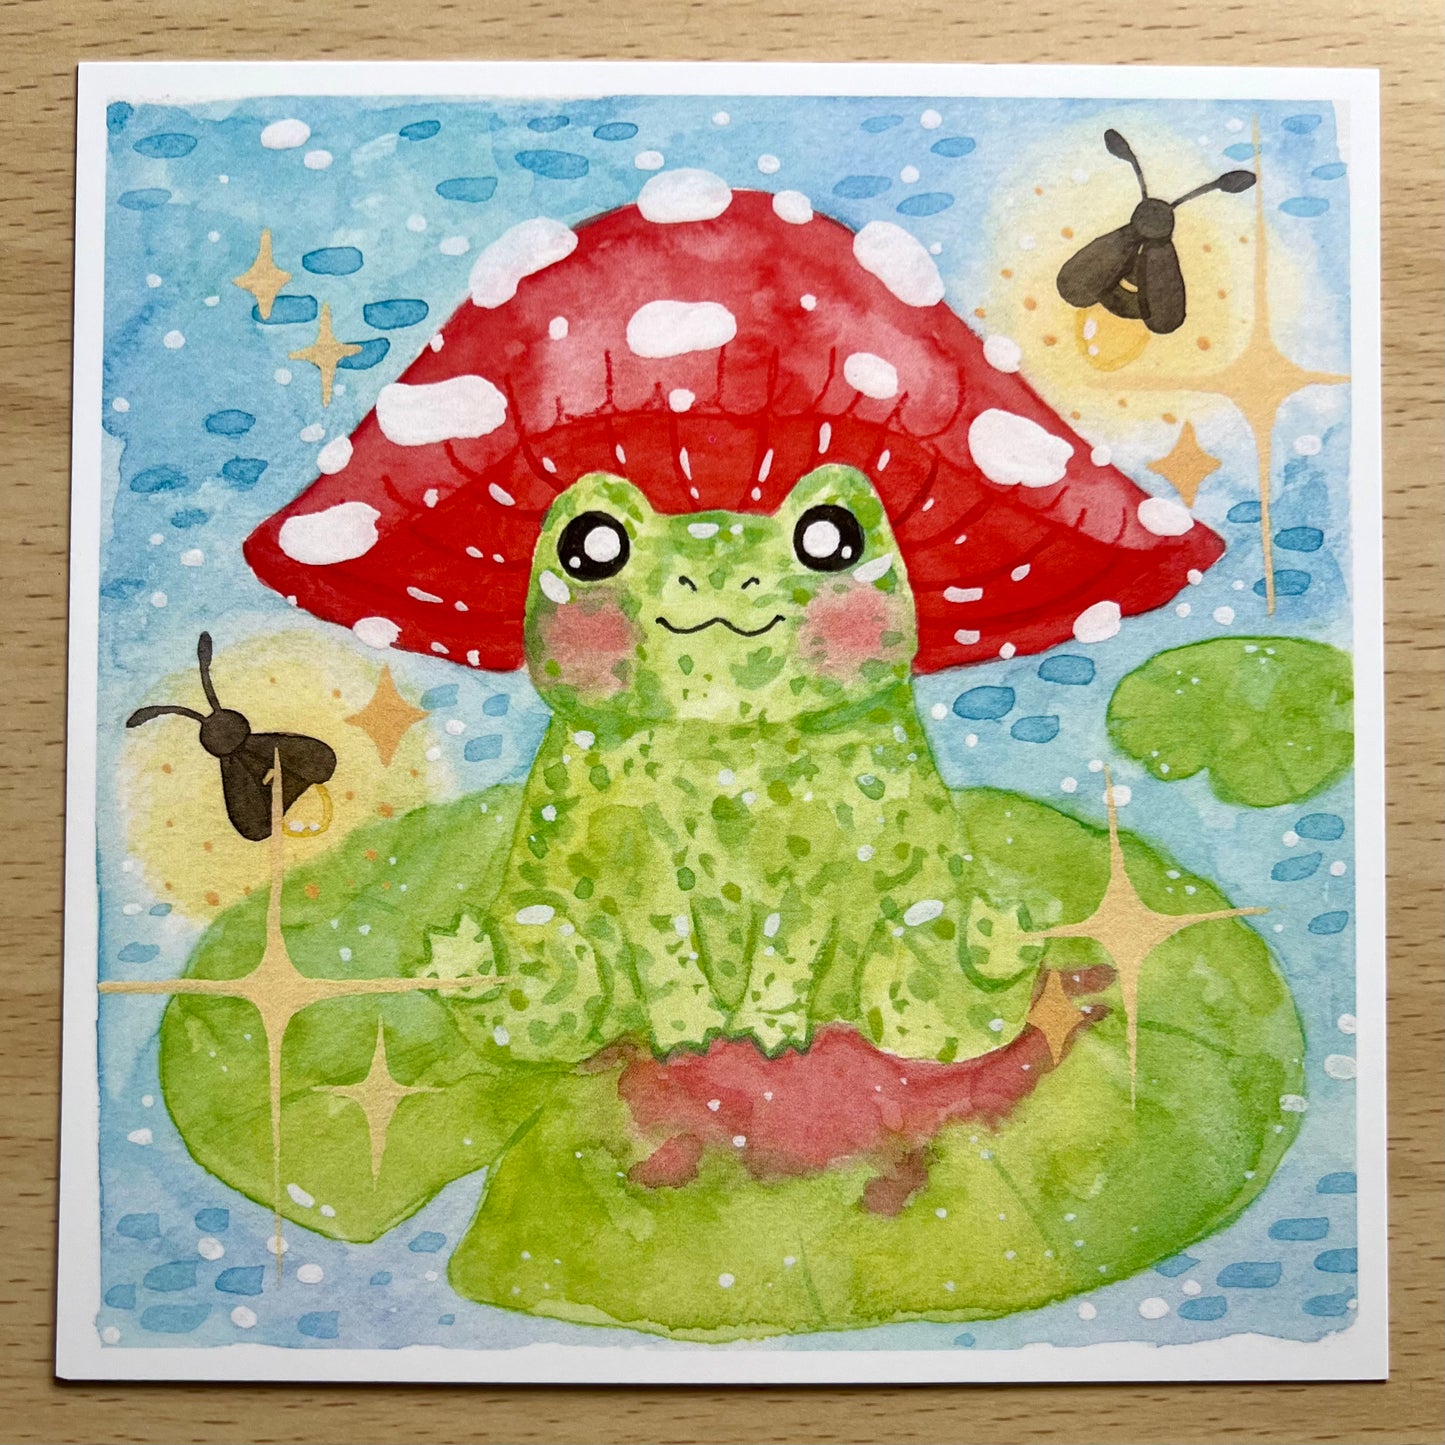 Mushroom Frog Print